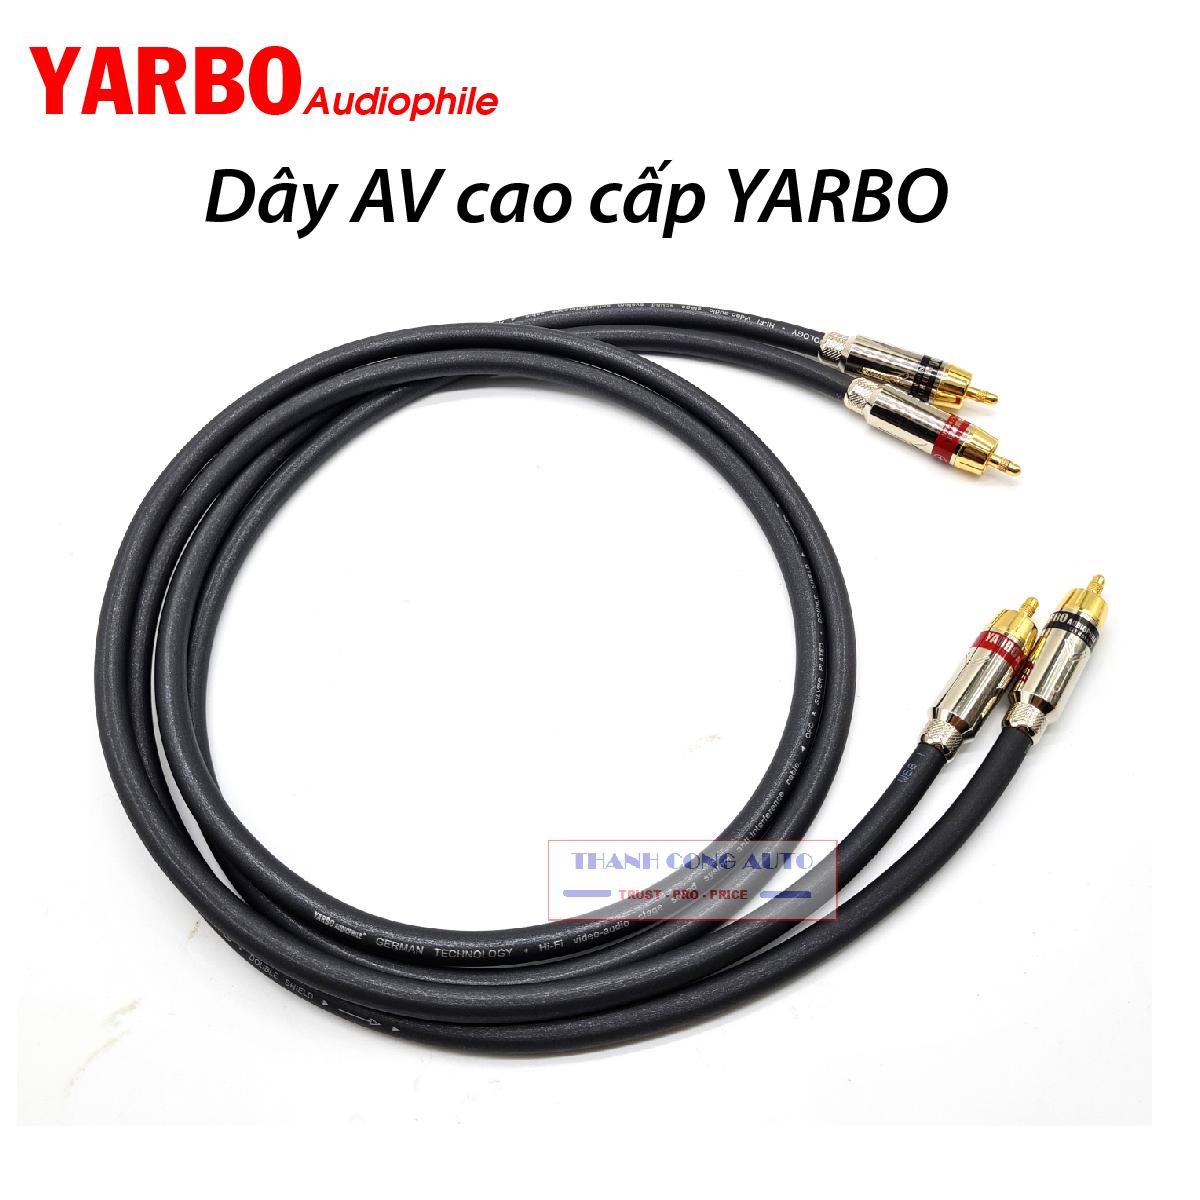 Cặp dây tín hiệu âm thanh YARBO SP101MC Audiophile GERMANY cao cấp lõi đồng mạ bạc dài 1m